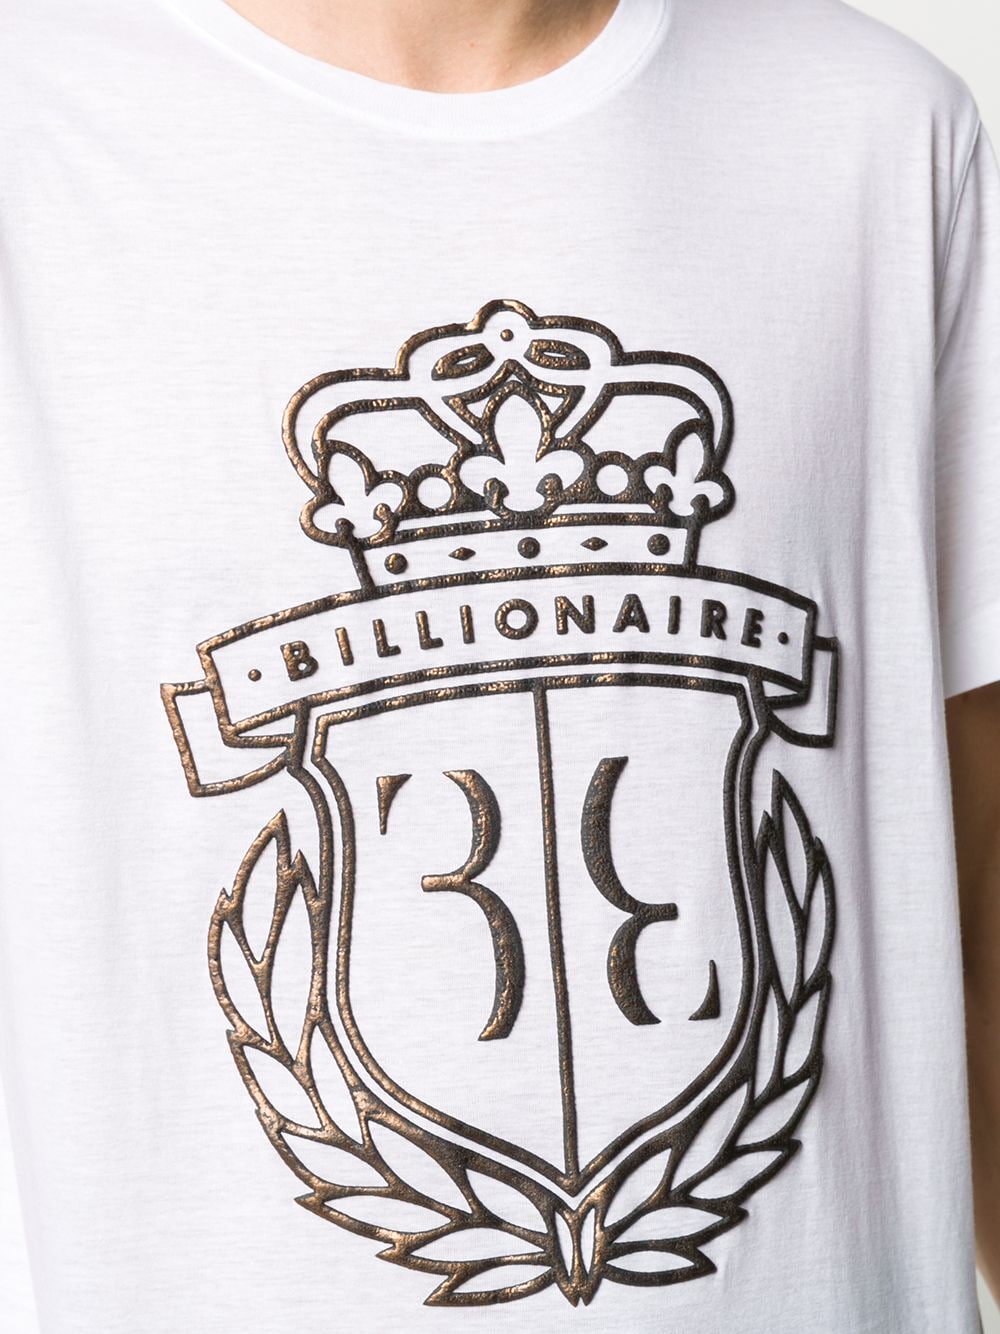 фото Billionaire футболка с логотипом